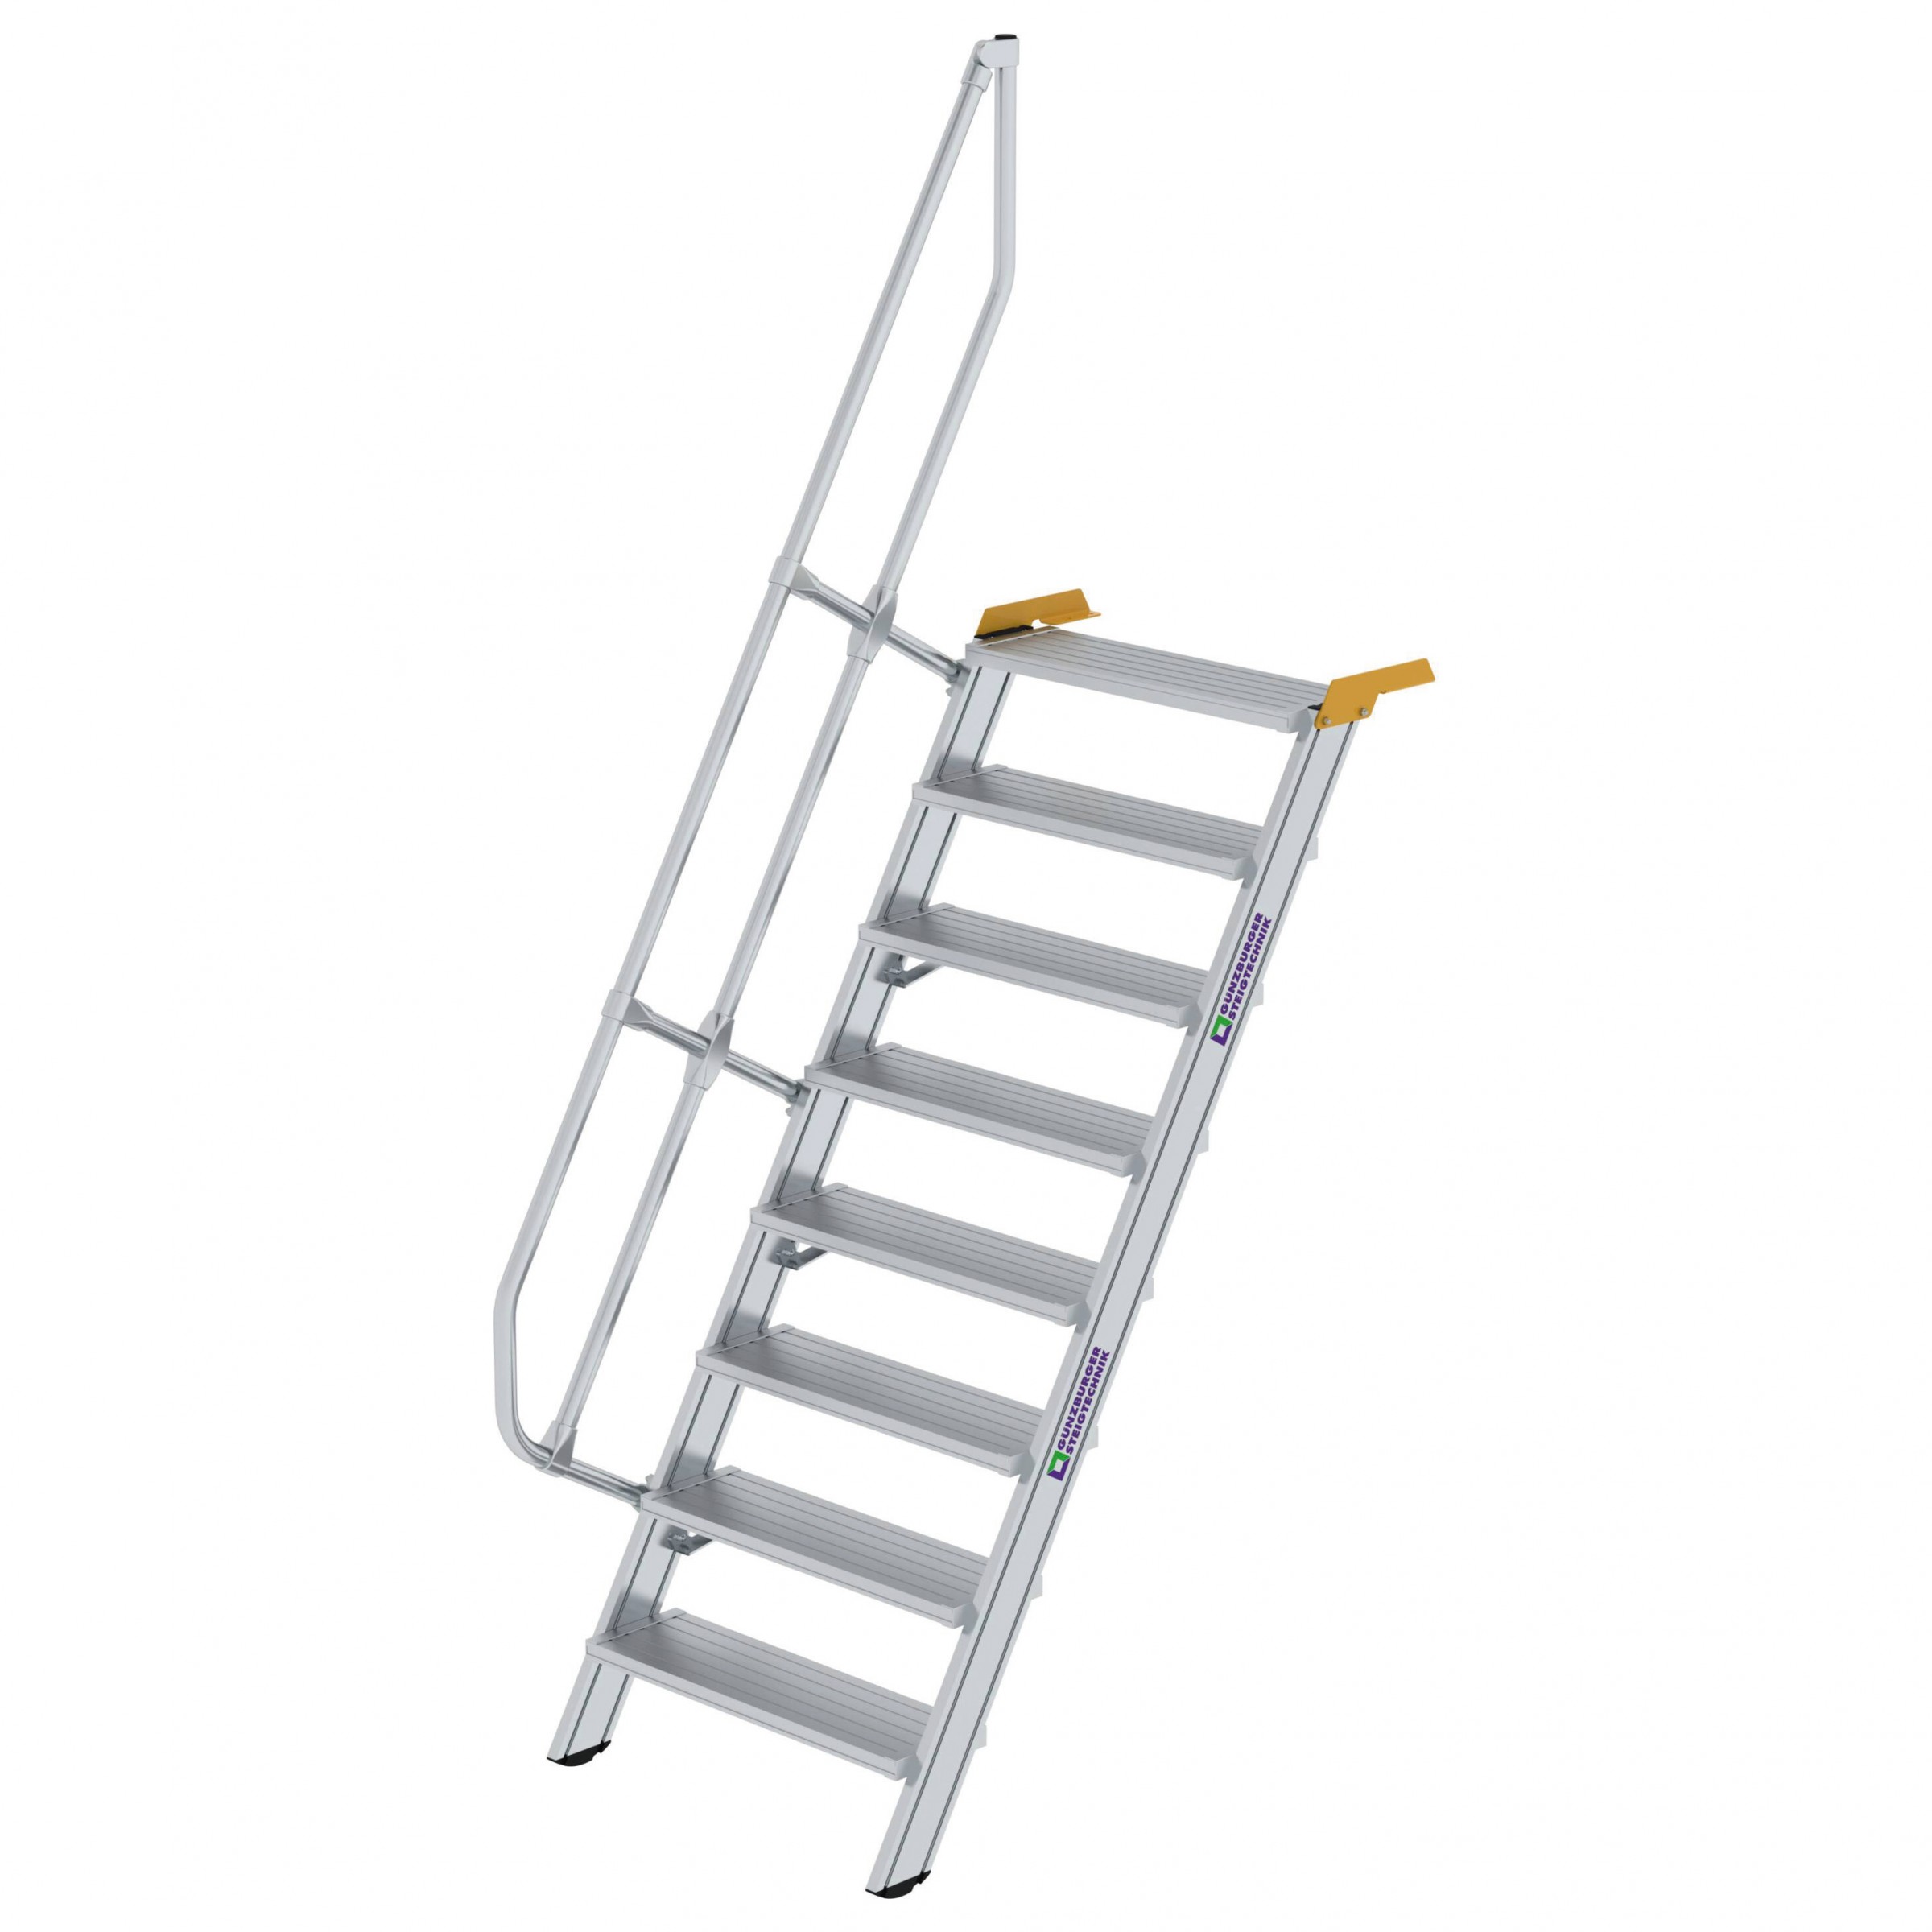 Aluminium-Treppe 60°, Stufenbreite 800 mm, 4 Stufen